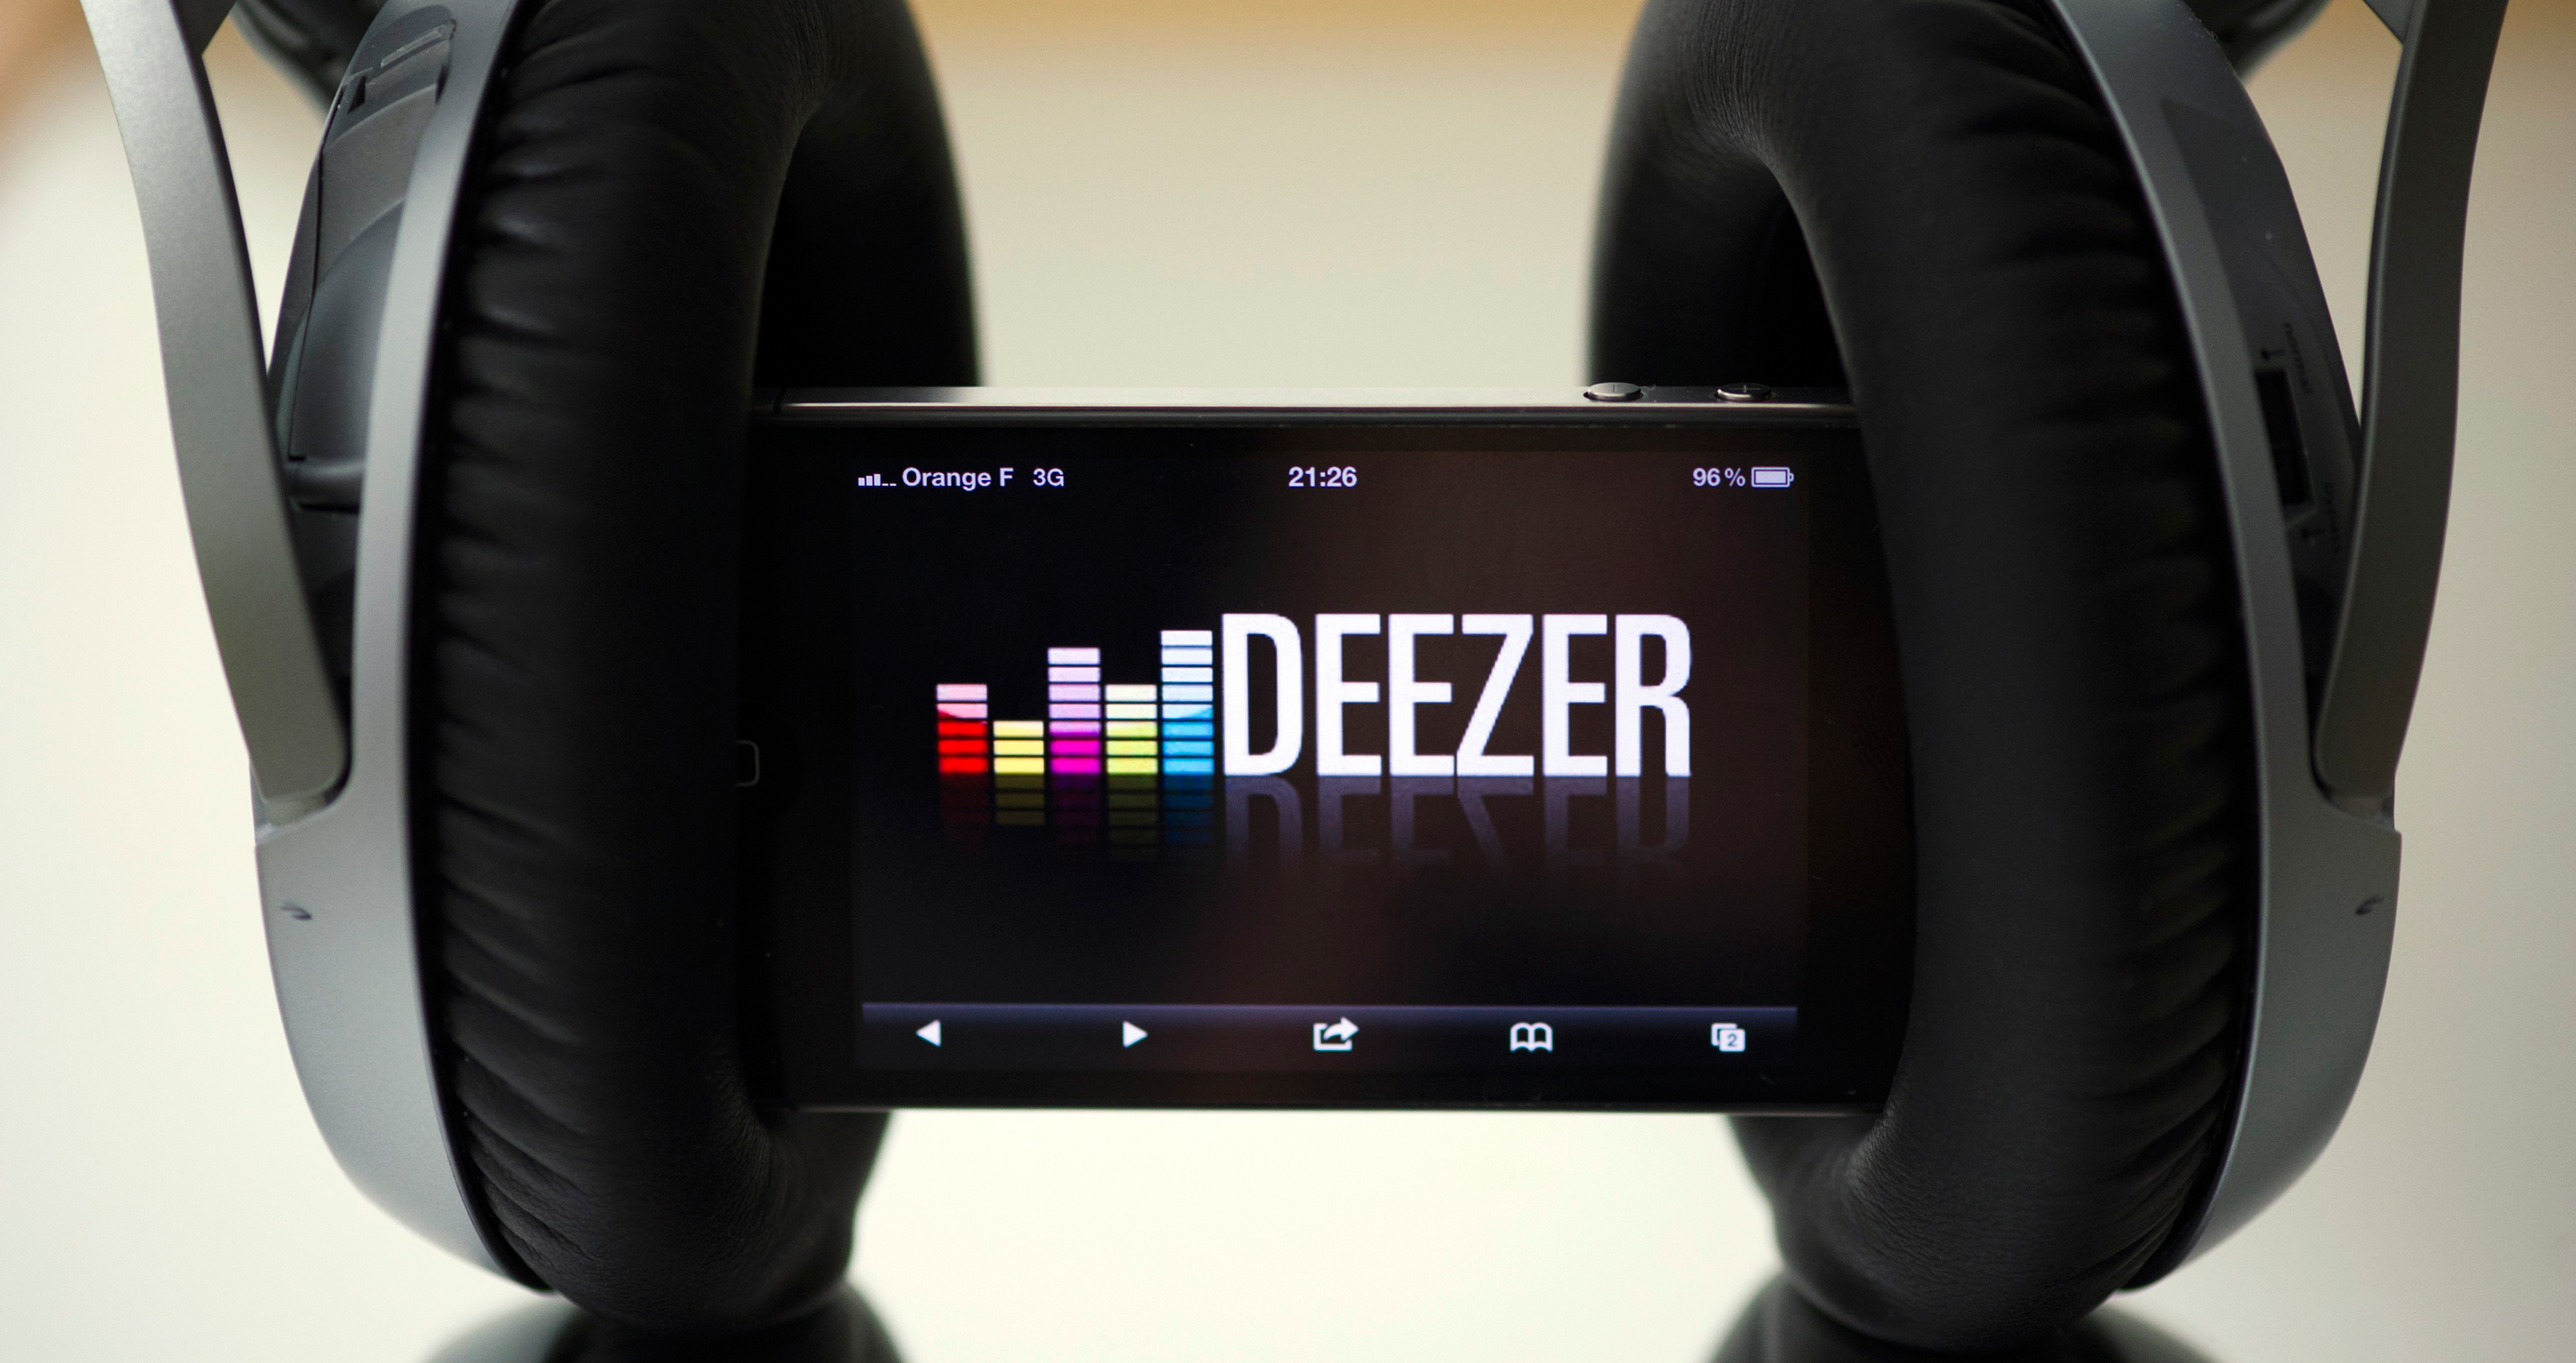 Deezer postpones A$467.5m IPO